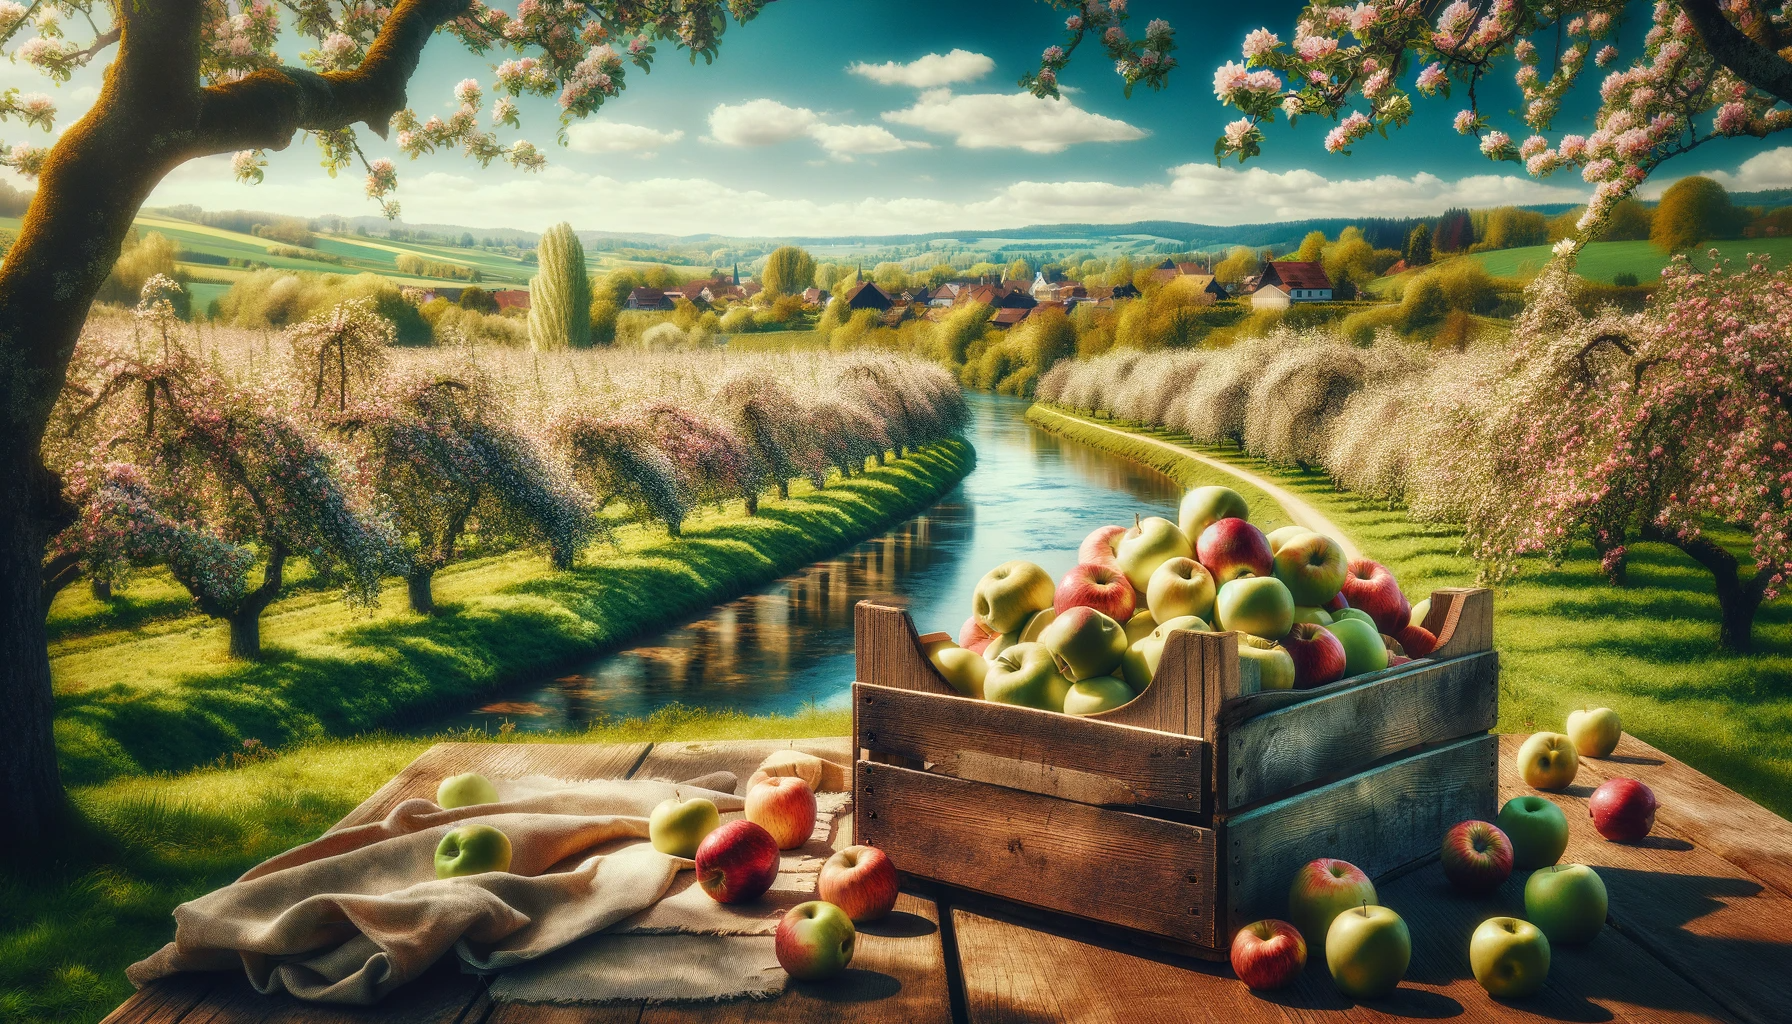 Ein schönes Bild aus dem Alten Land. Ein Obstkorb mit Äpfel und eine Sicht auf Blühende Obstbäume.